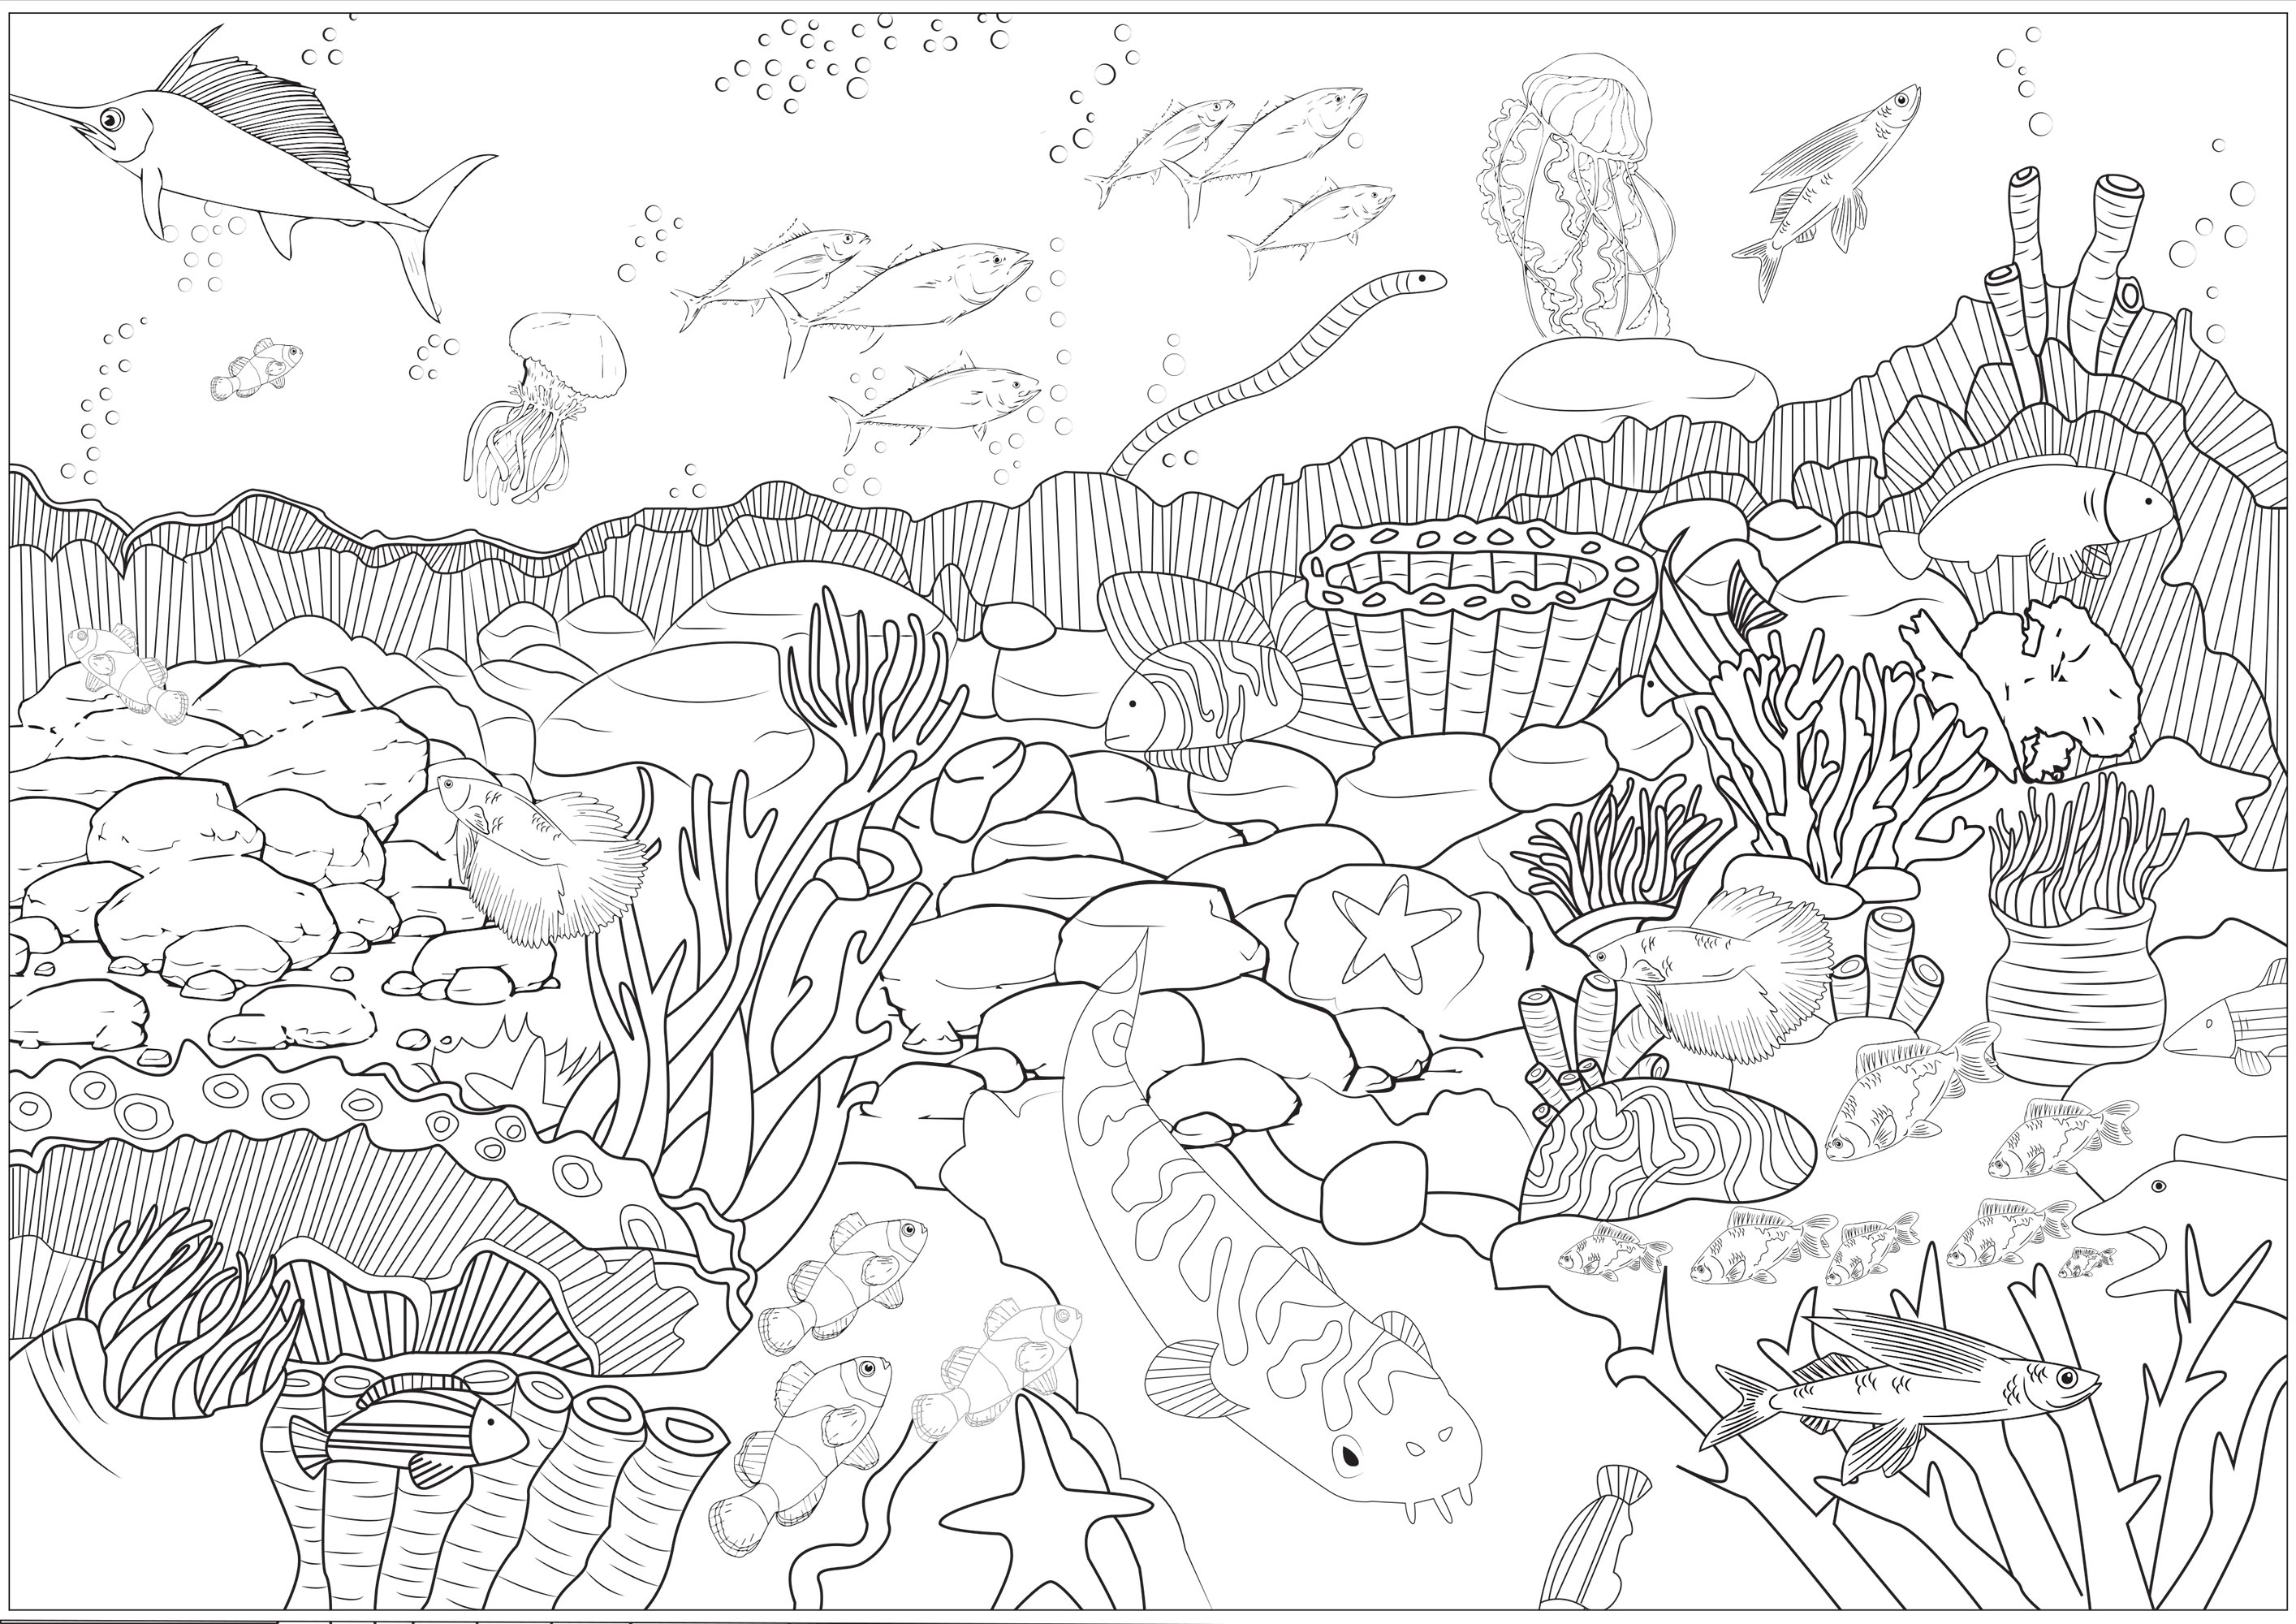 Colorir estes fundos marinhos e as diferentes espécies de peixes, polvos, corais que aí vivem .., Artista : Axelle